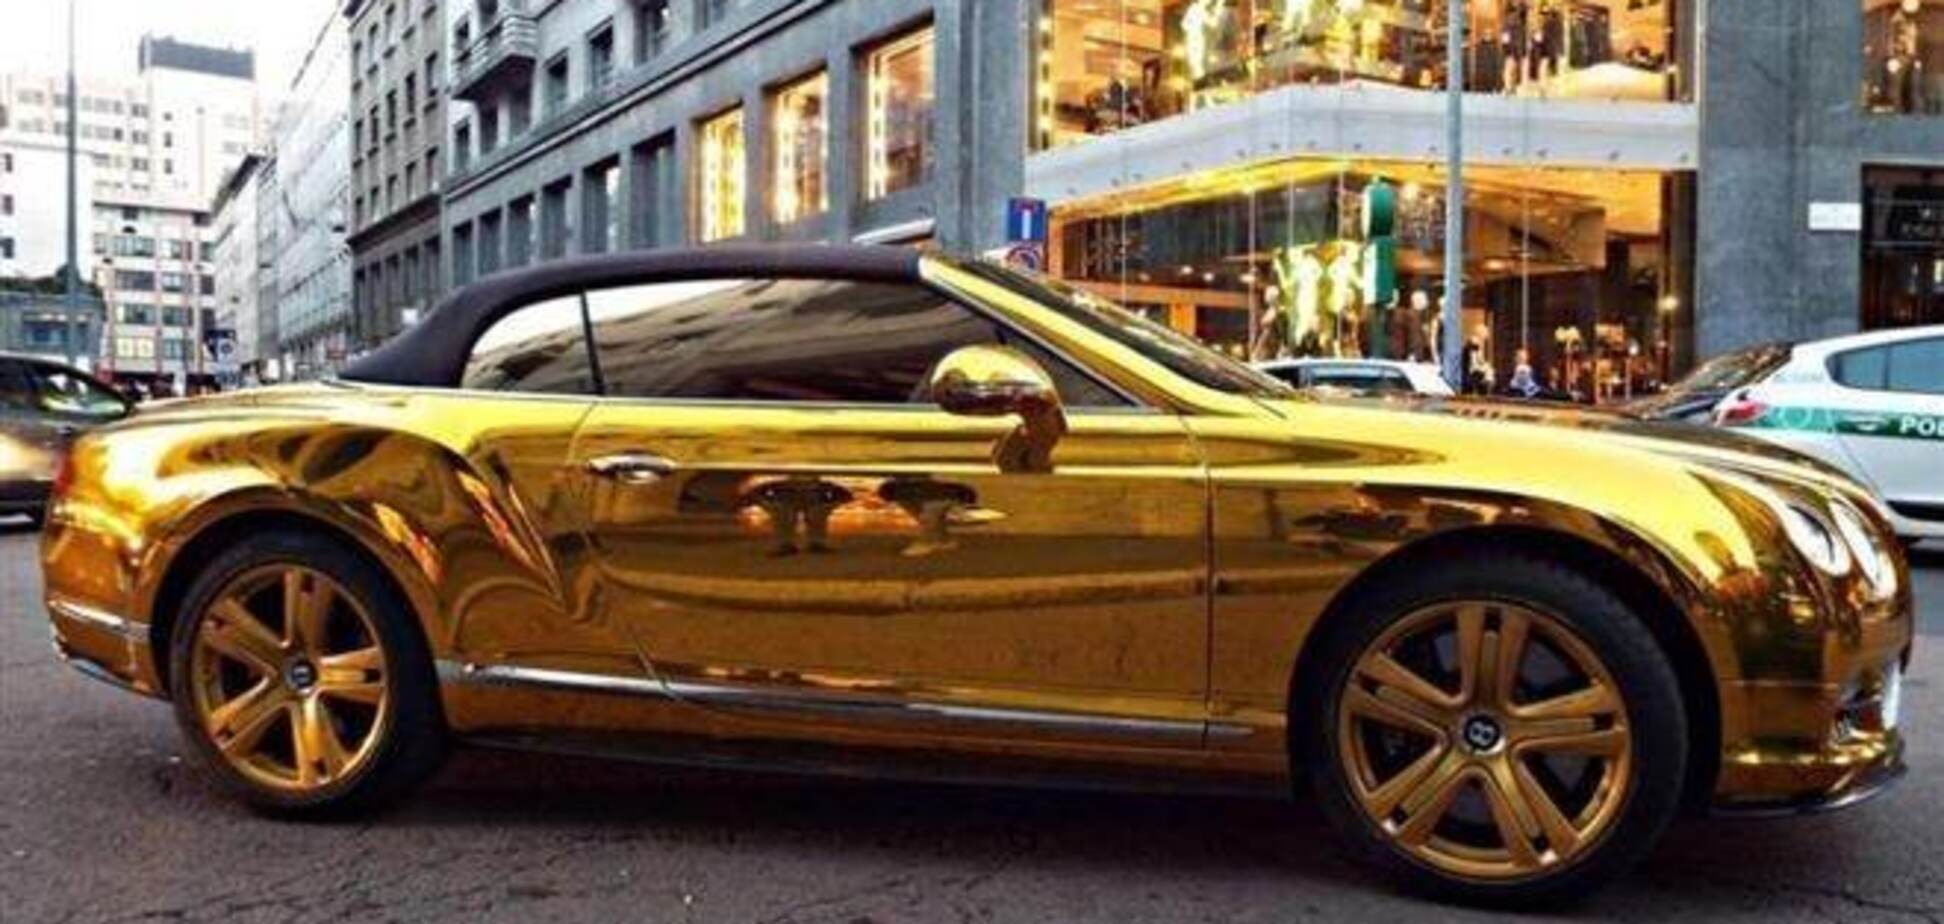 По Европе колесит золотой Bentley с донецкими номерами